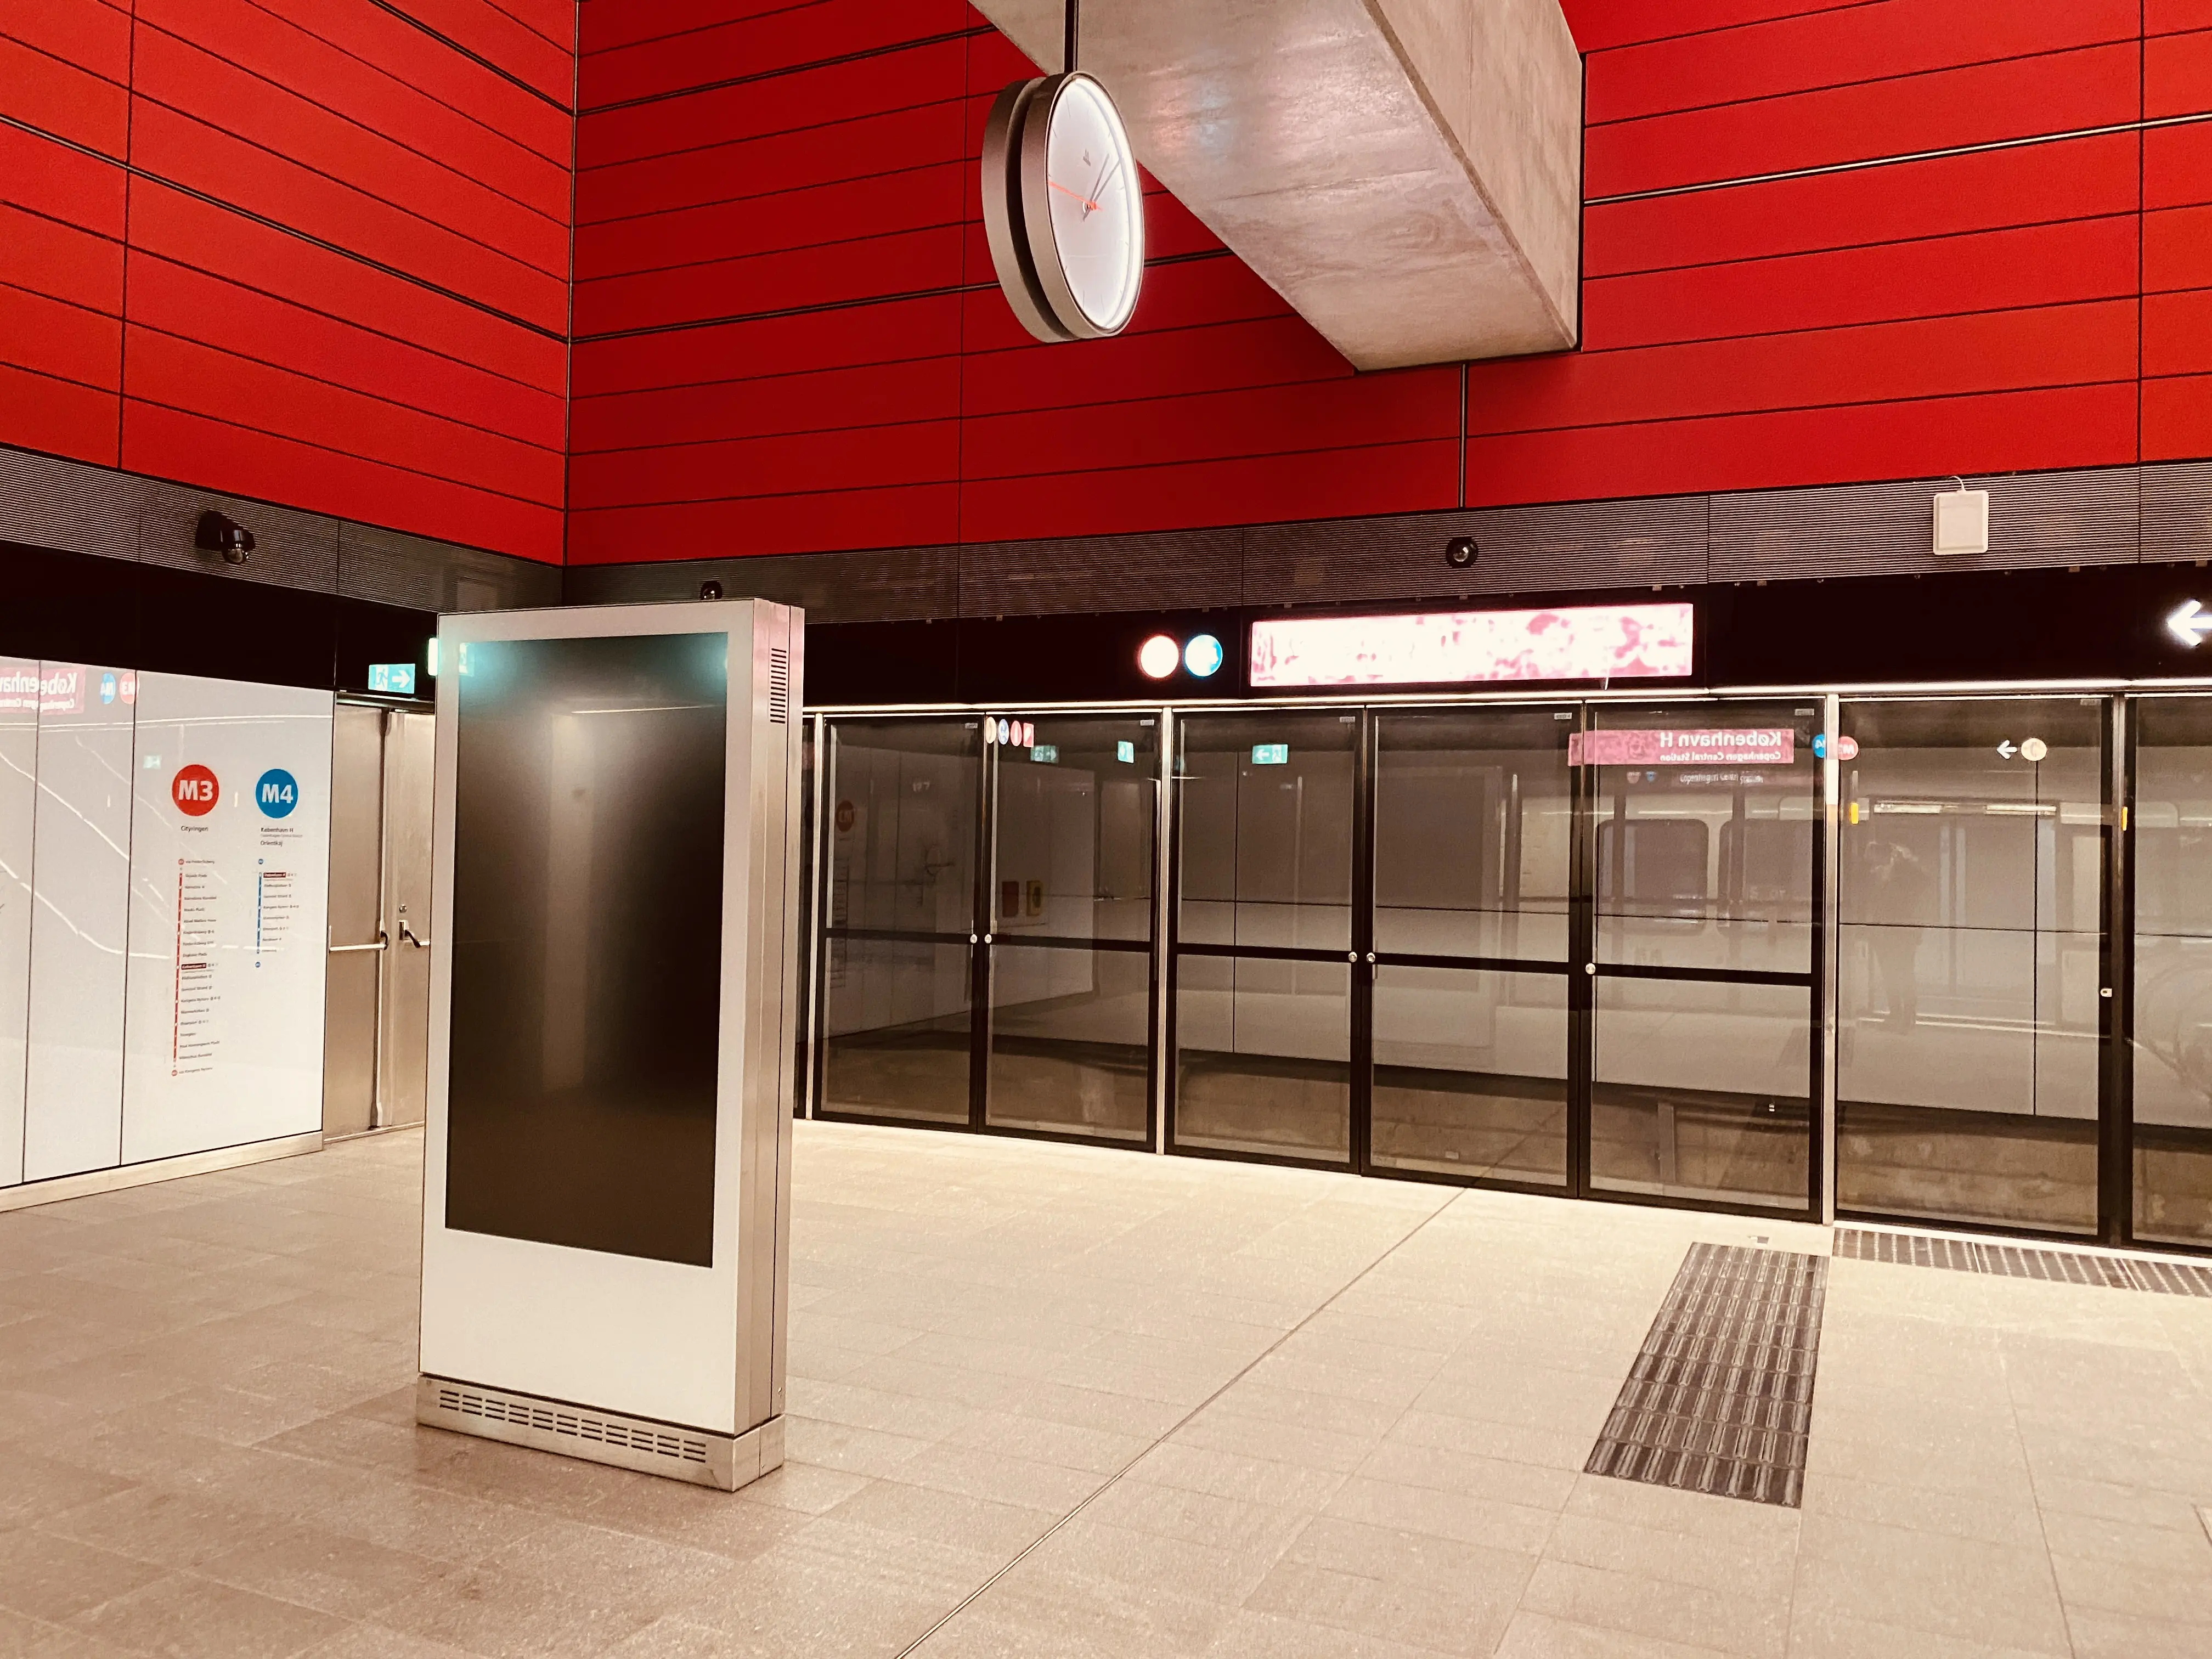 Billede af København H Metrostation, som har en varm og dyb rød farve, der signalerer trafik, transport og transit.